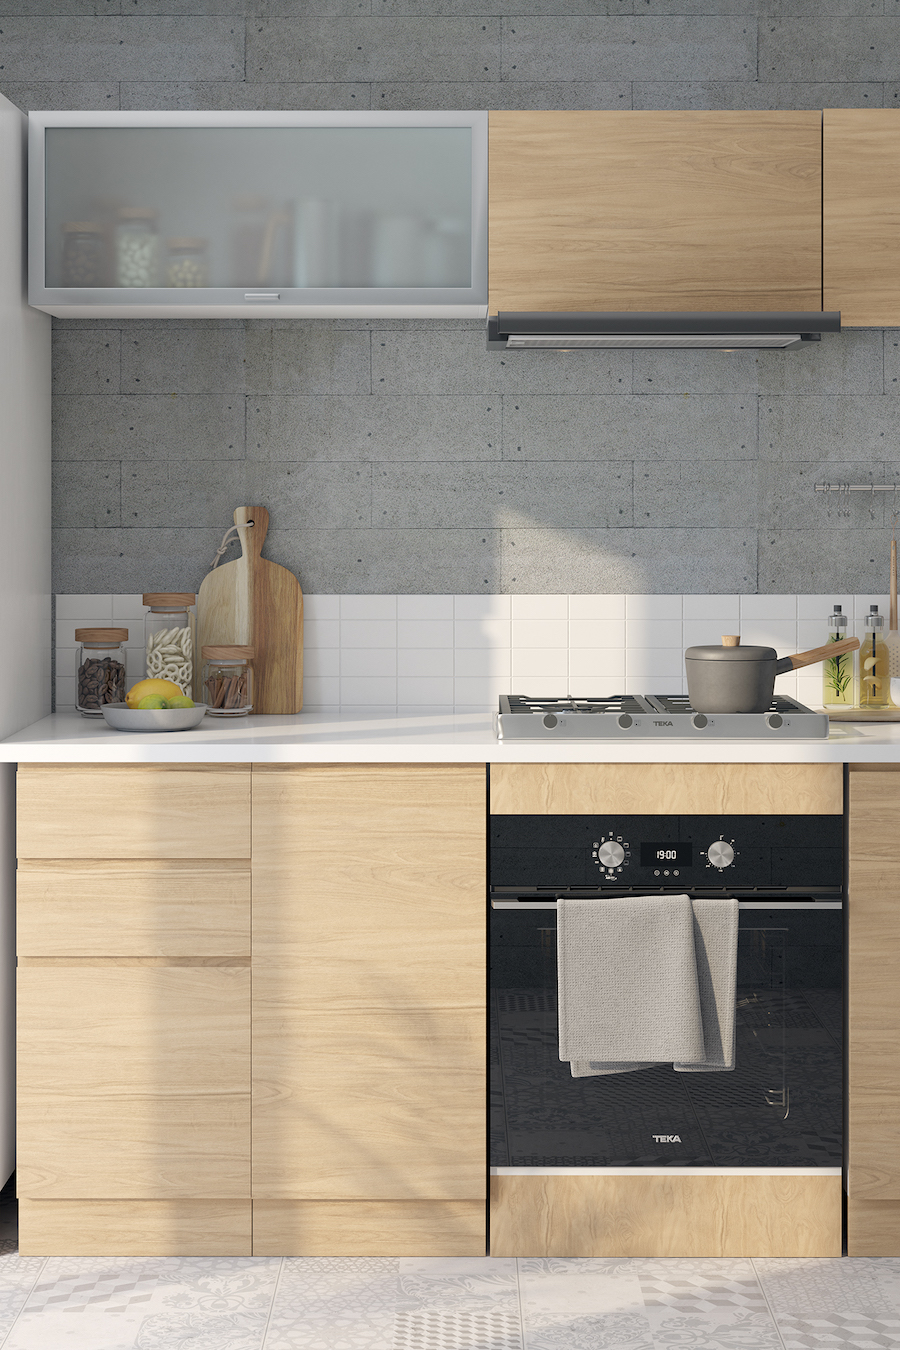 Detalle de una cocina moderna con muebles de madera clara sin manillas, muros de concreto y azulejos blancos. 